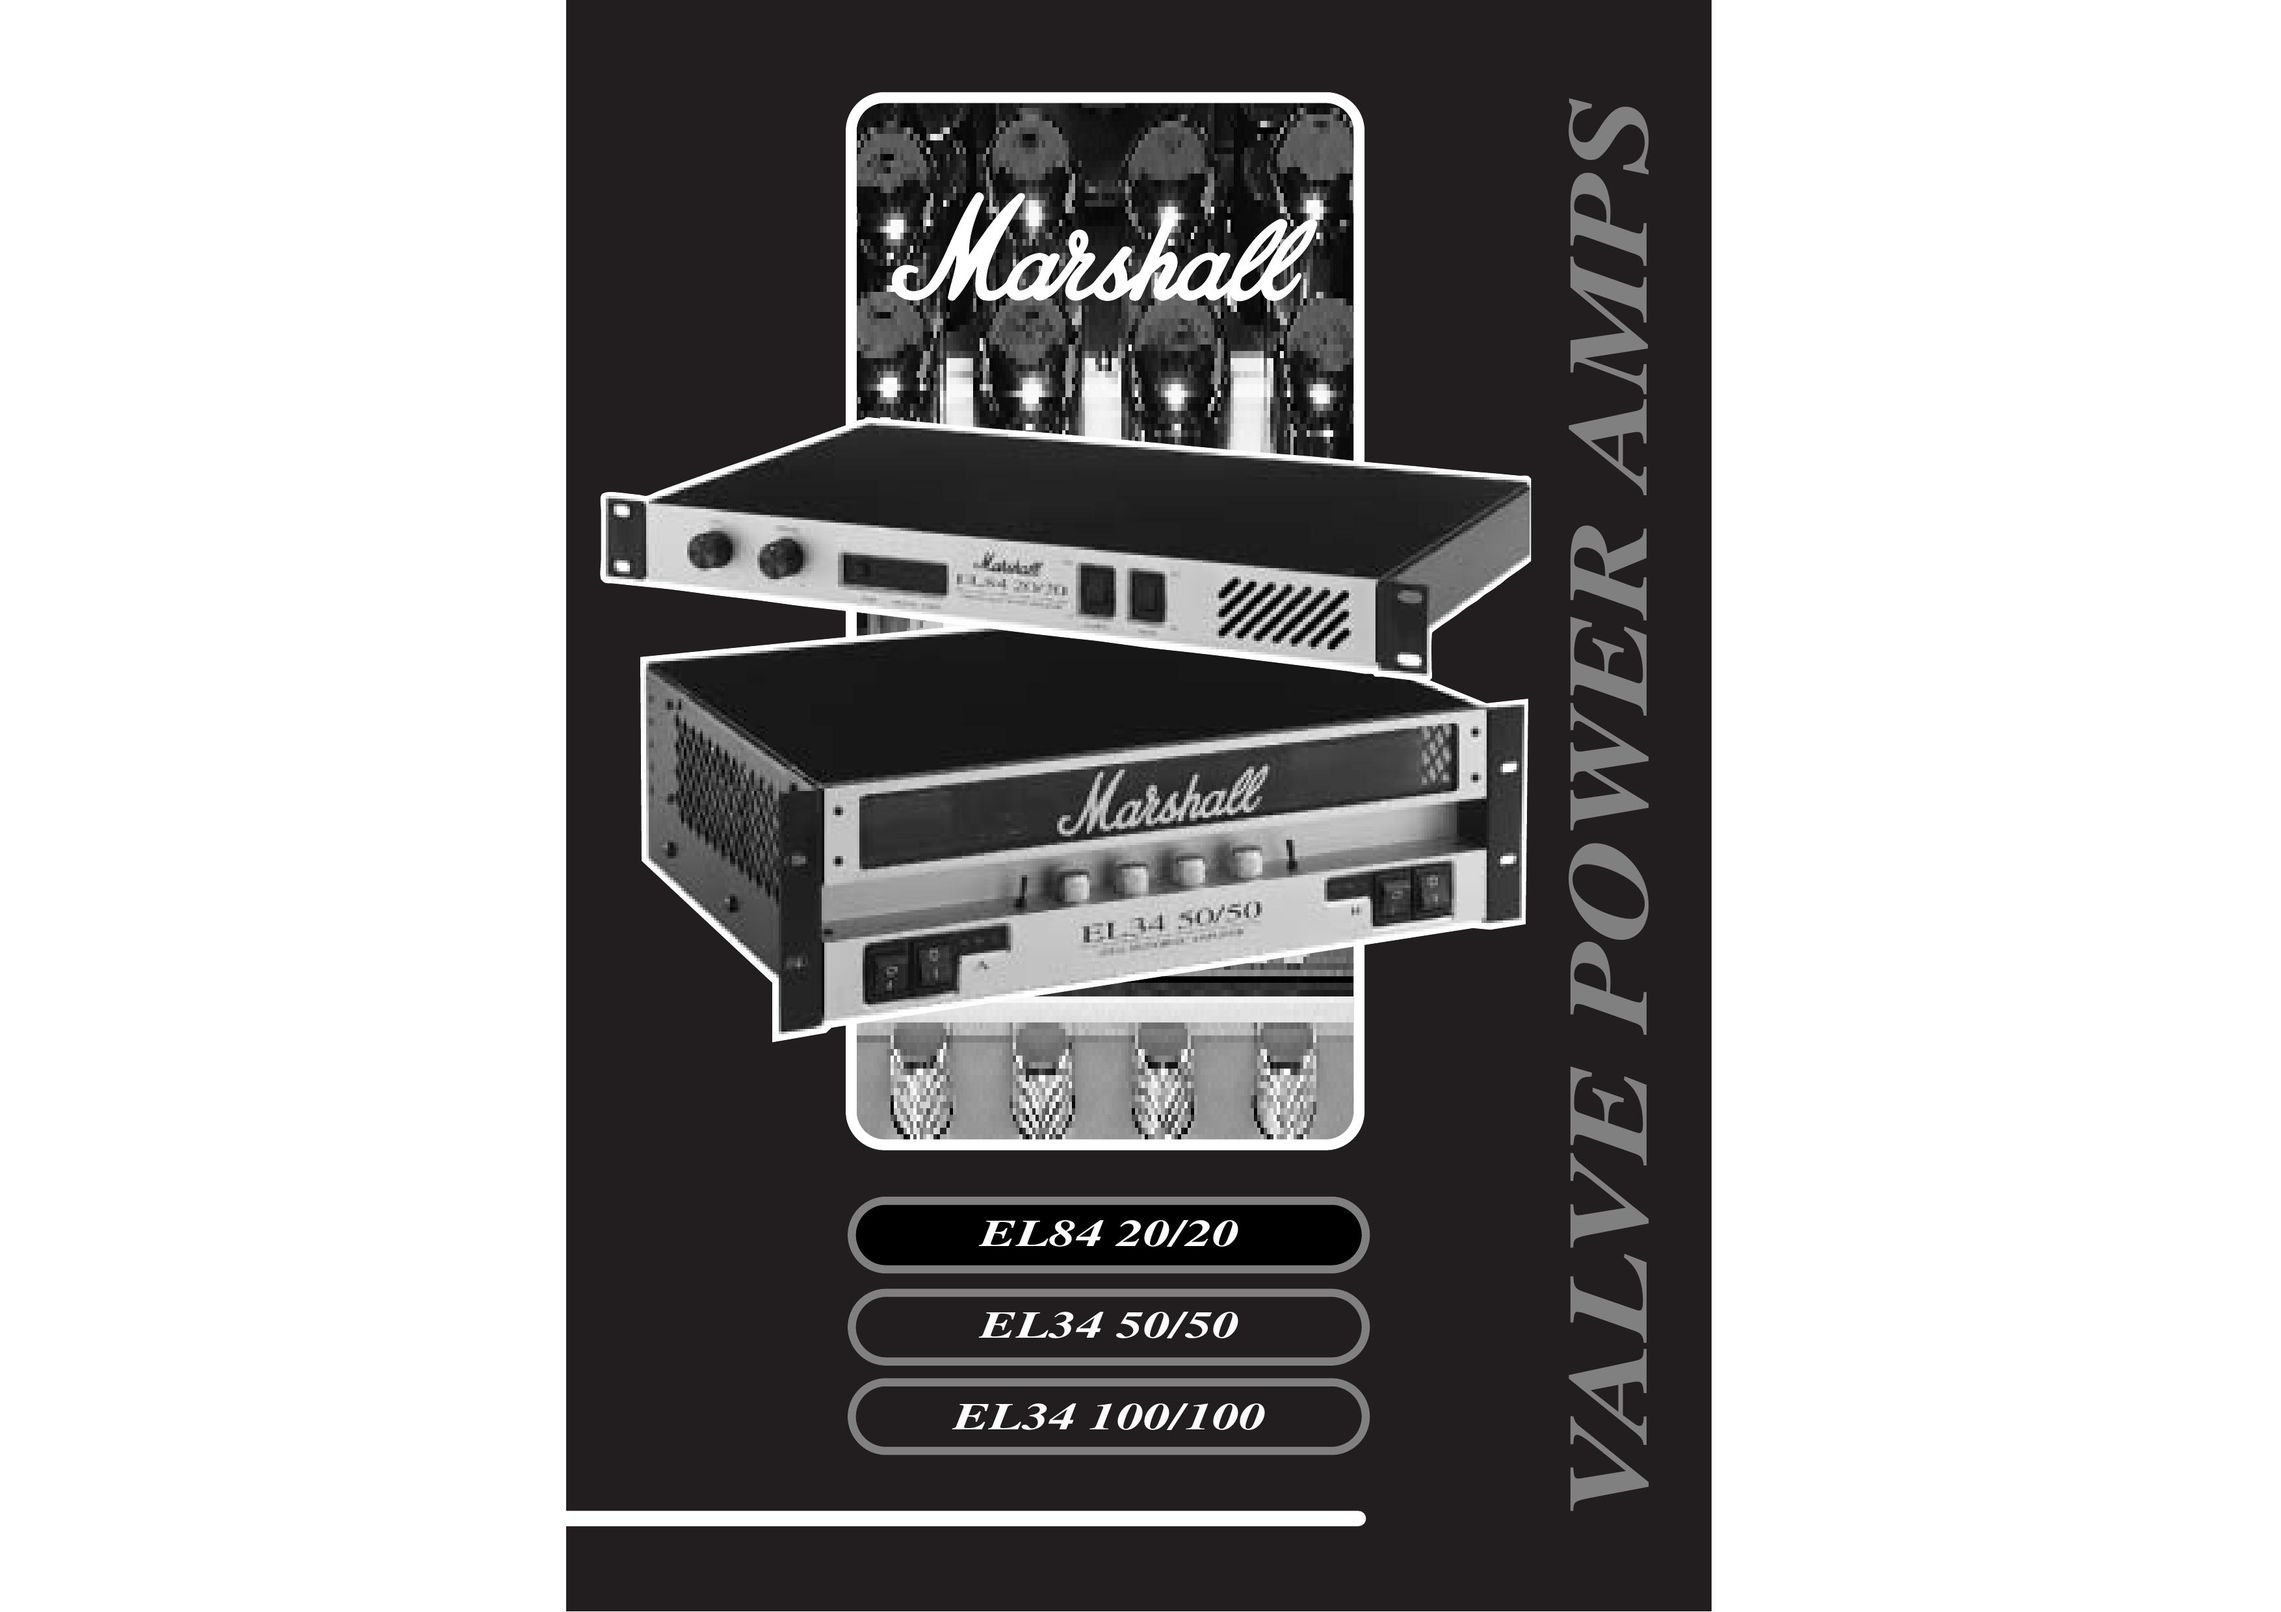 Marshall Amplification EL84 20/20 Stereo Amplifier User Manual